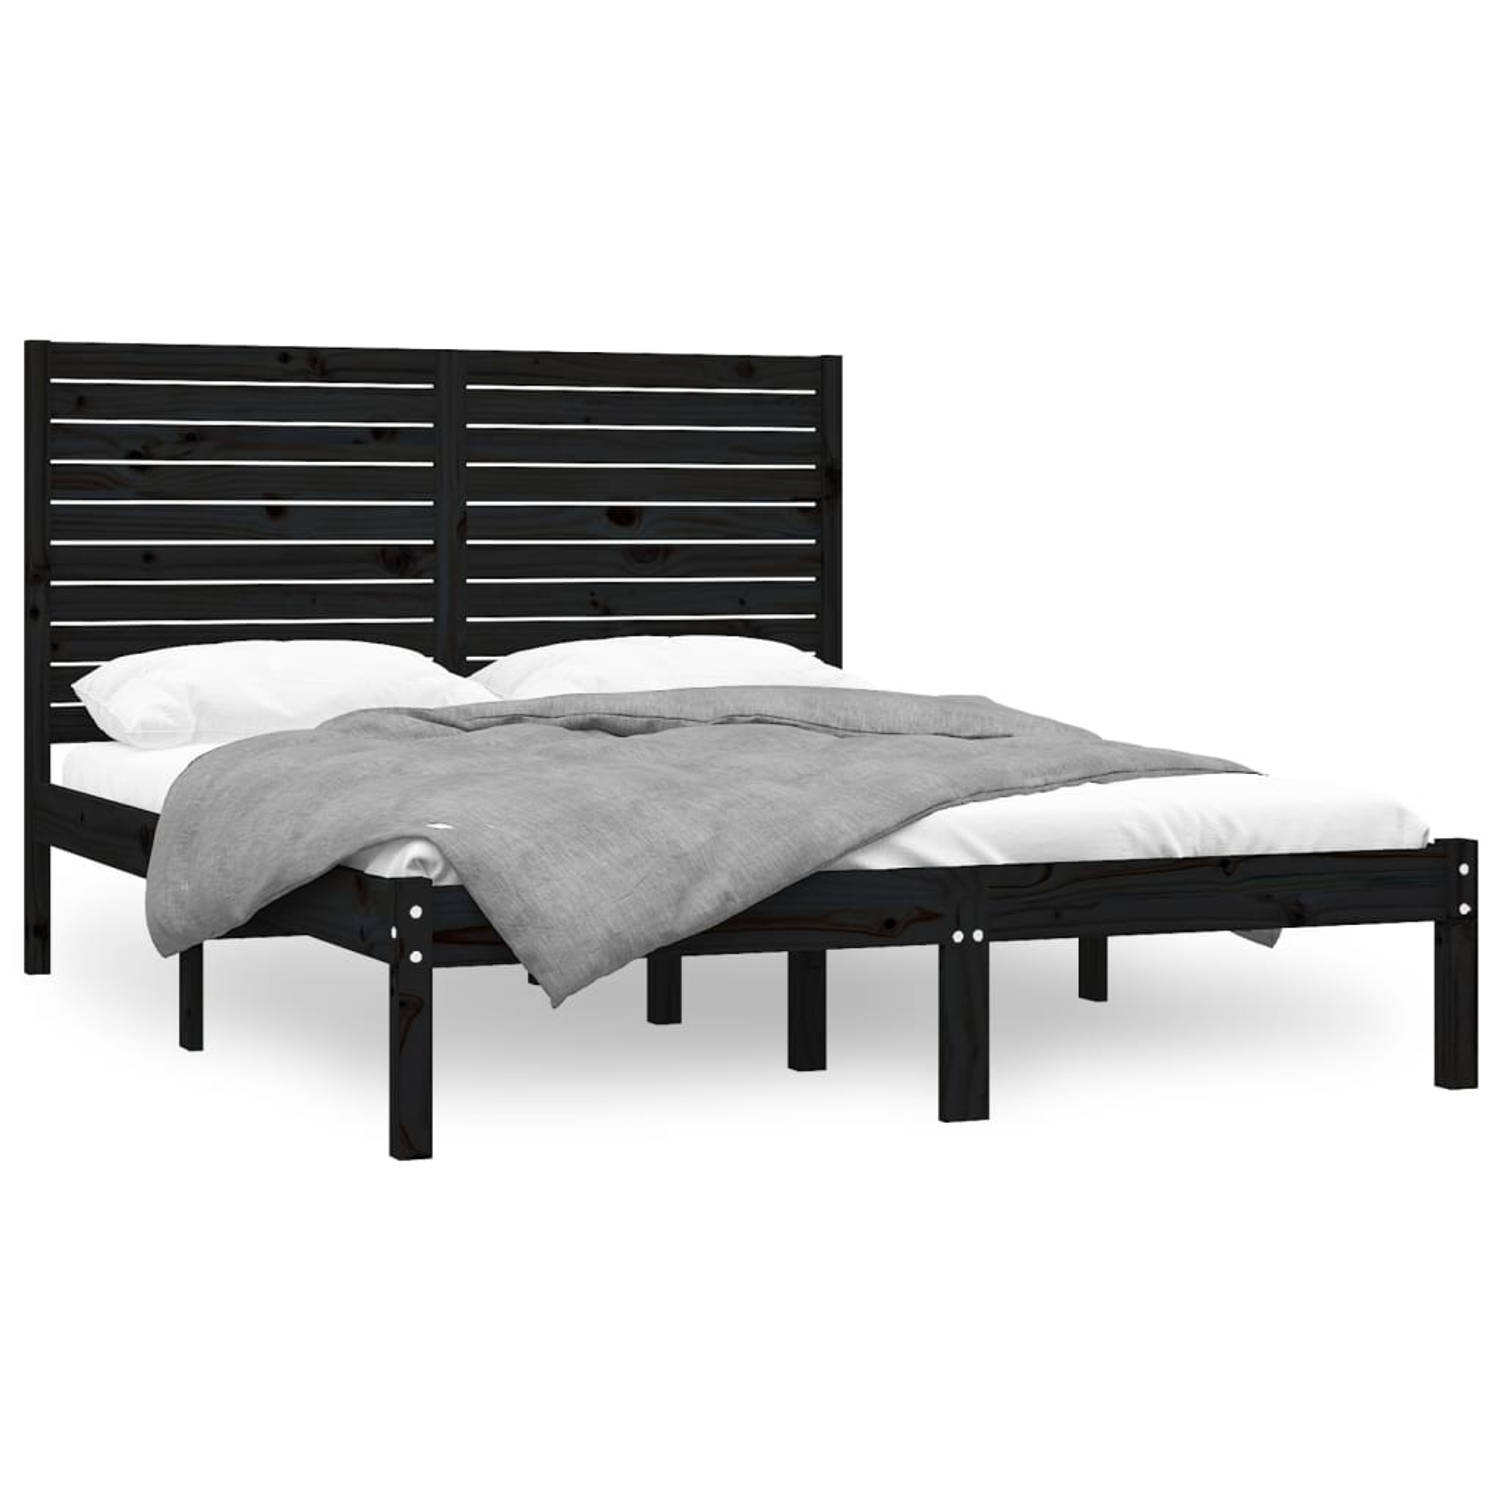 The Living Store Bedframe massief hout zwart 160x200 cm - Bedframe - Bedframes - Tweepersoonsbed - Bed - Bedombouw - Dubbel Bed - Frame - Bed Frame - Ledikant - Bedframe Met Hoofde